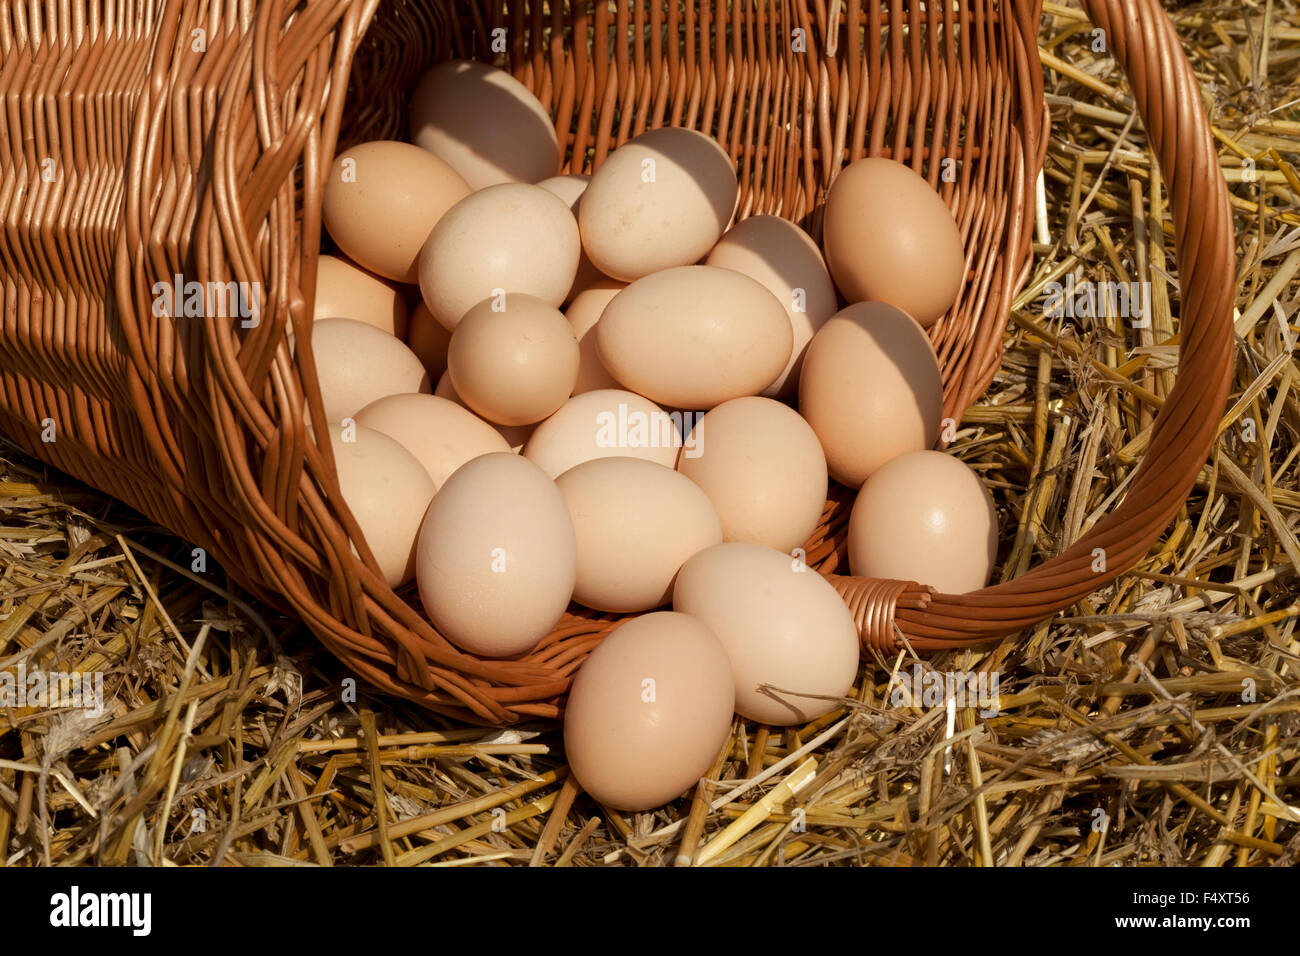 Beaucoup de pays nombre d'œufs sur la paille dans le panier Banque D'Images